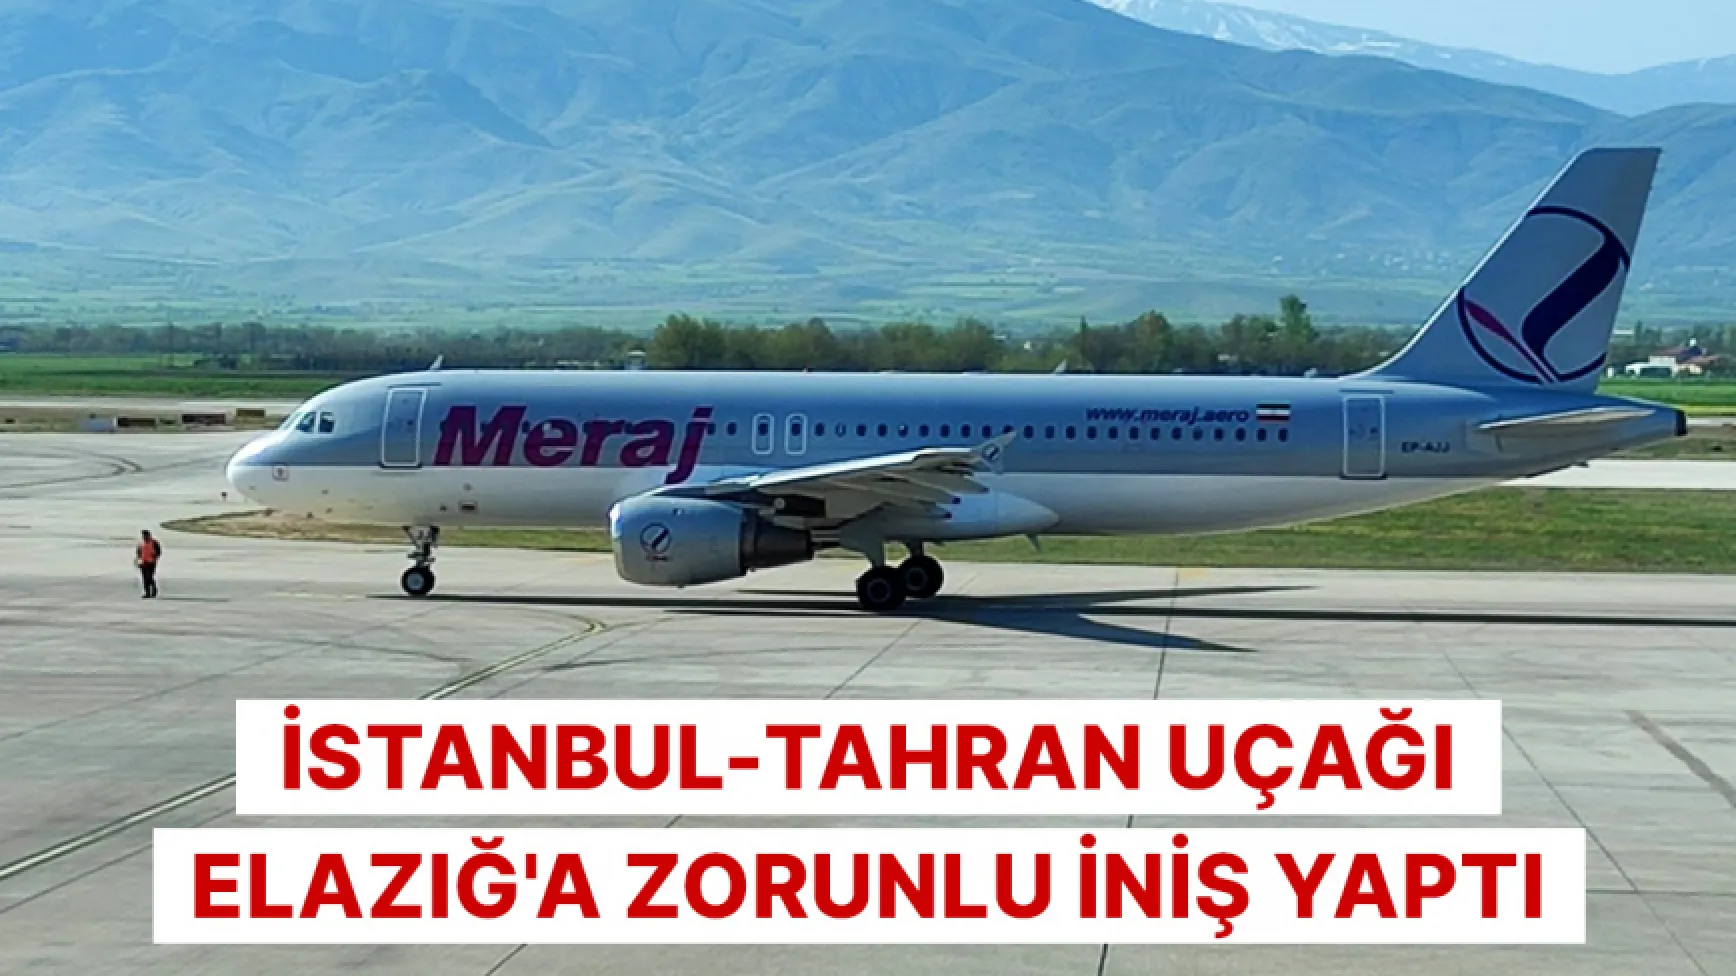 İstanbul-Tahran uçağı Elazığ'a zorunlu iniş yaptı